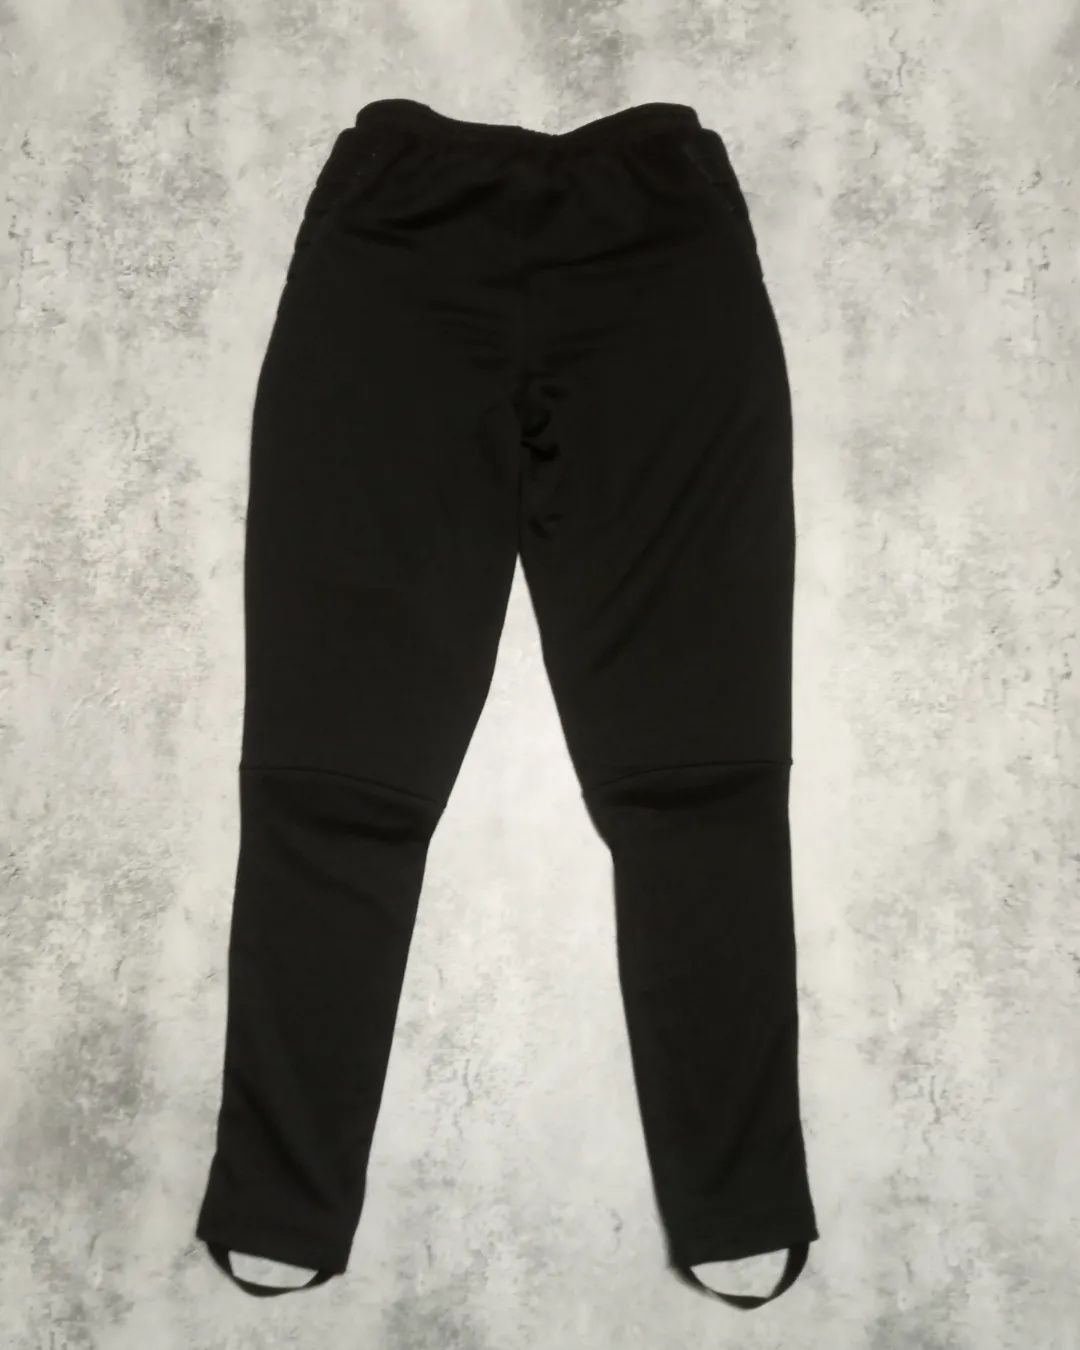 Фирменные оригинальные футбольные штаны для вратаря бренда Найк ориг